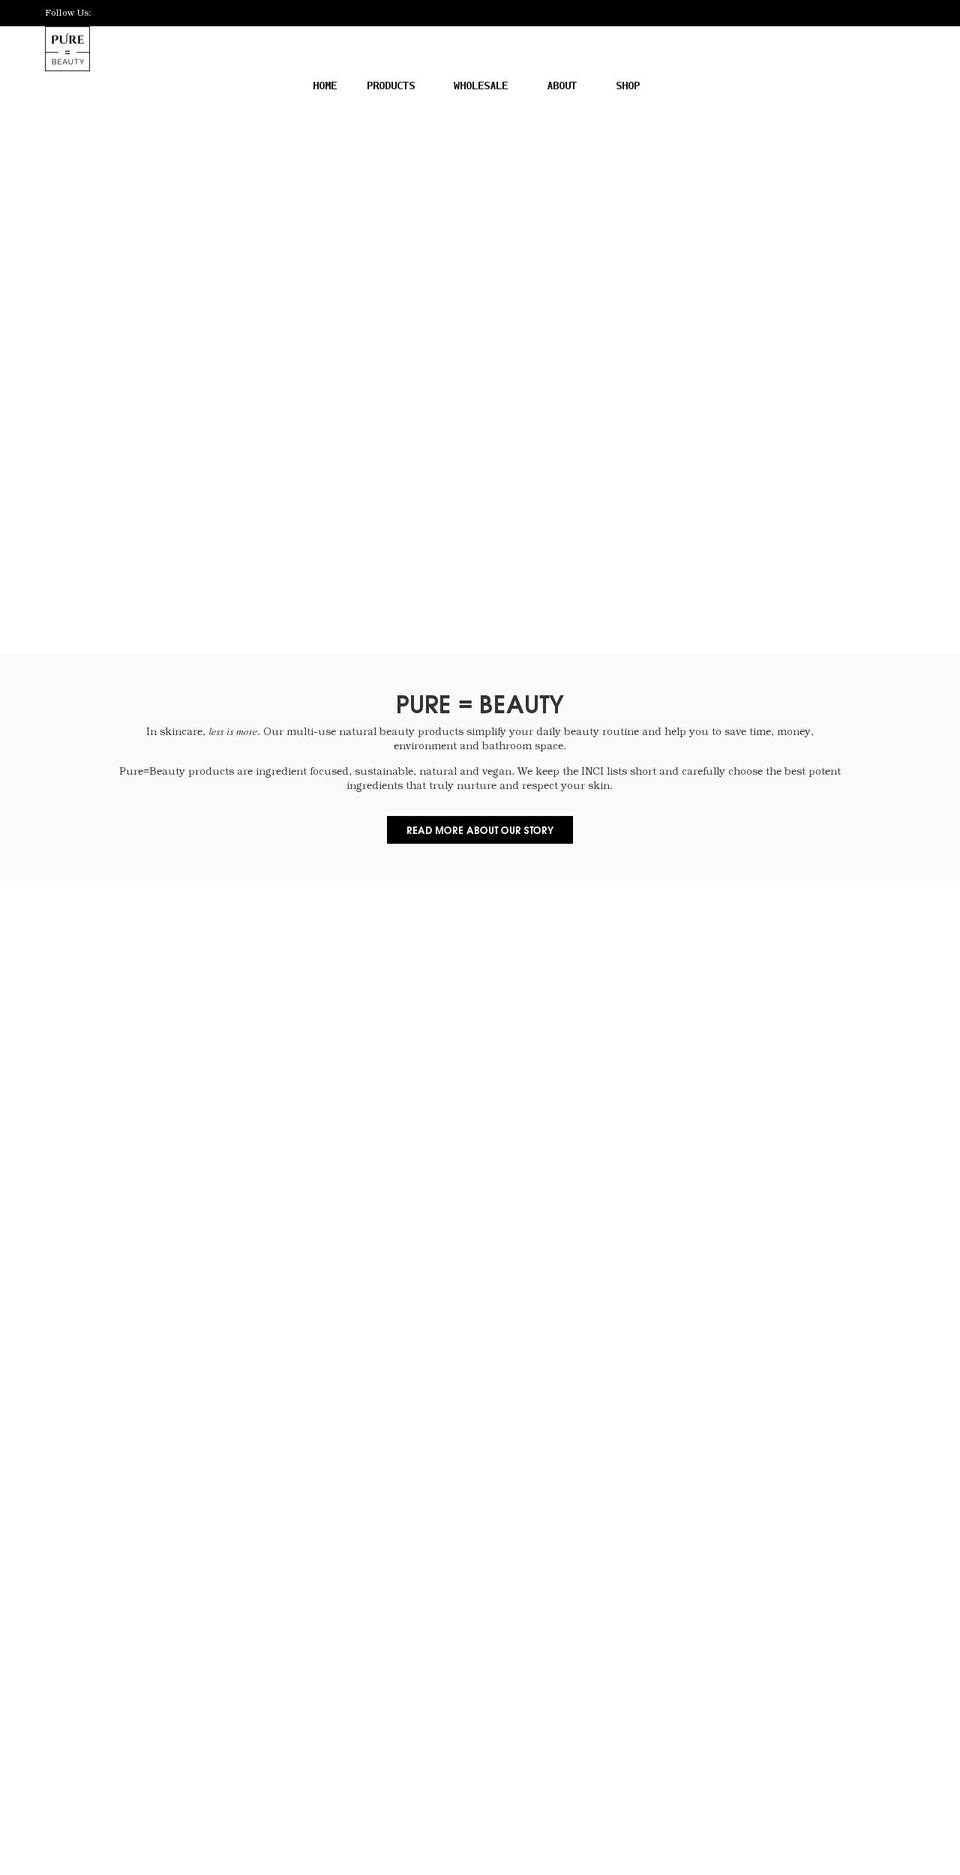 Avone Shopify theme site example pureisbeauty.com